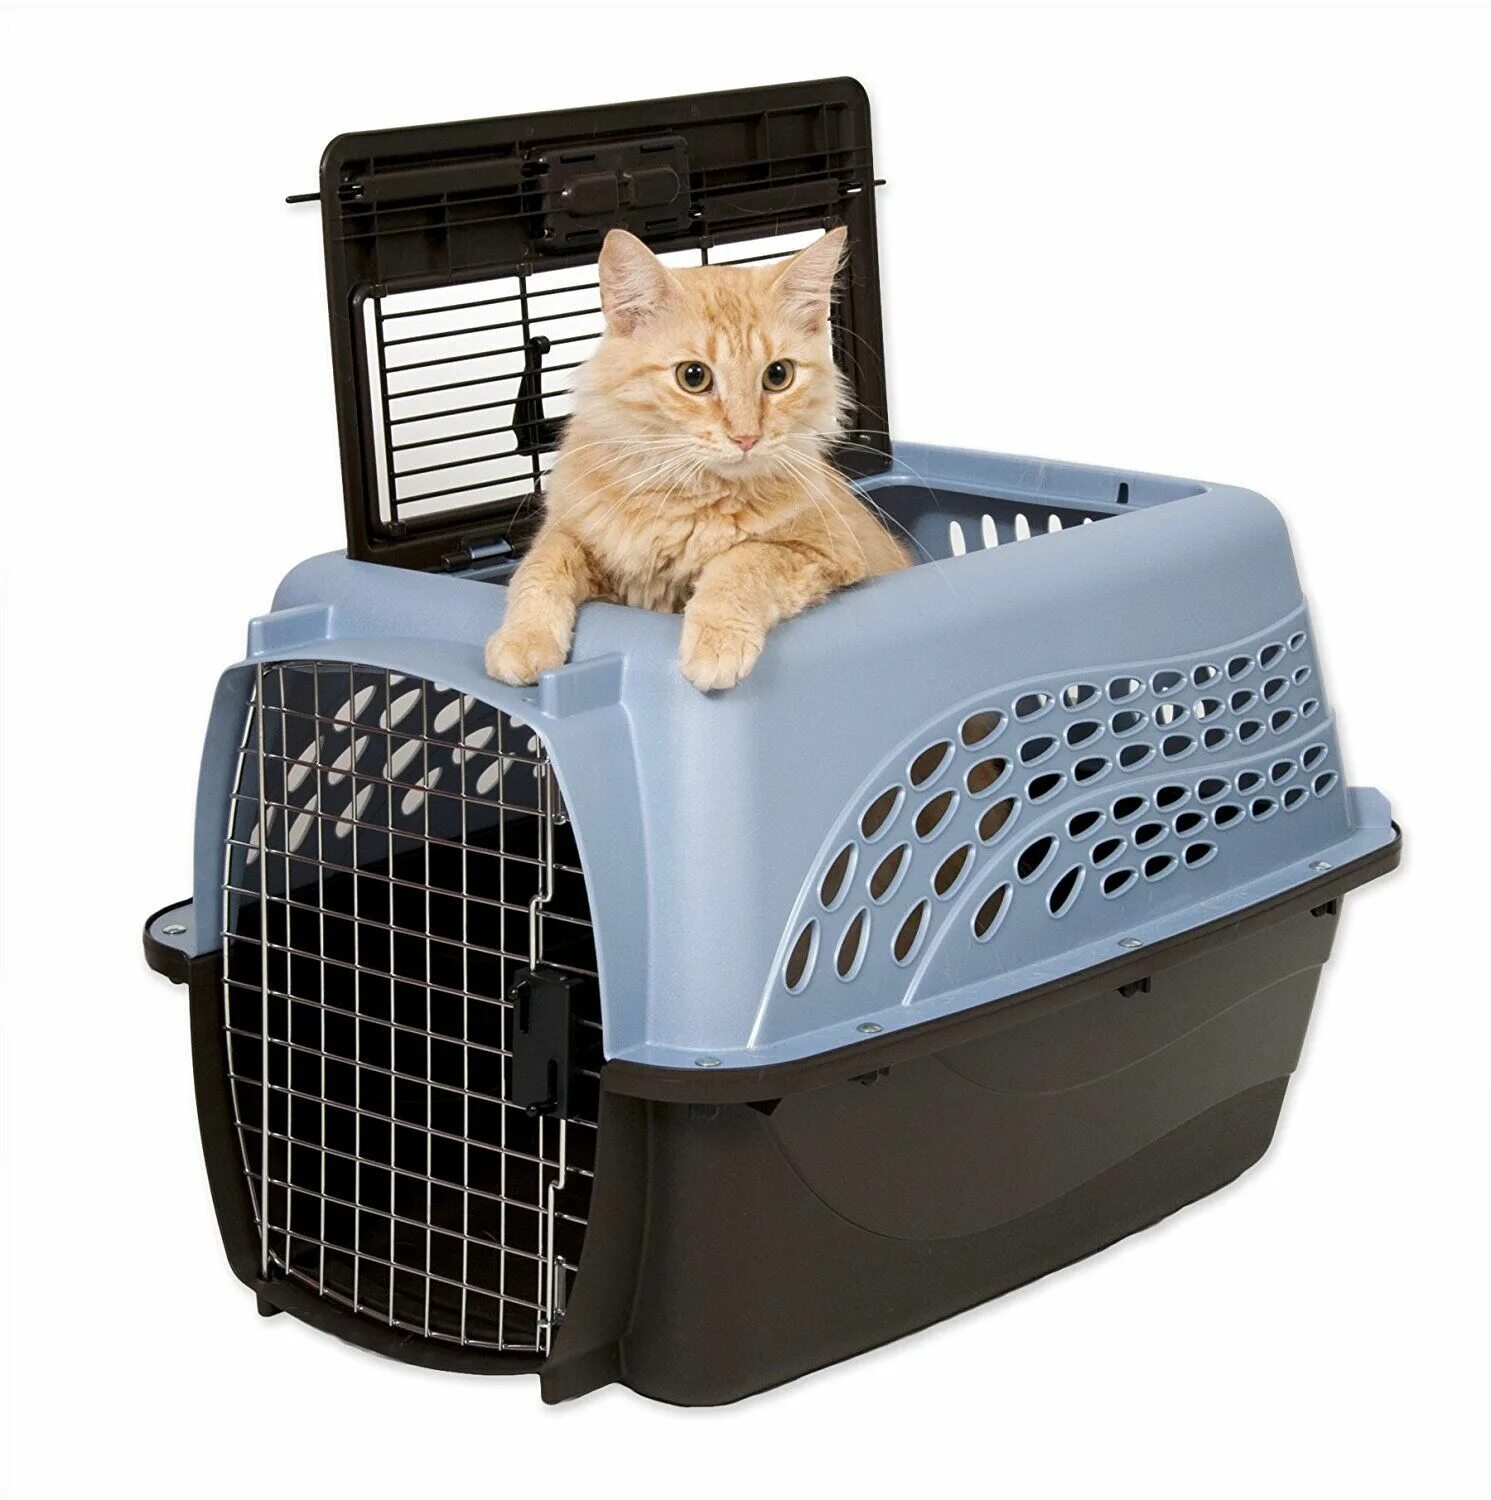 Переноска Cat Carrier. Cat Carrier переноска для кота. Pet Shuttle переноска. Переноска перевозка для кошек. Какая переноска для кошек лучше